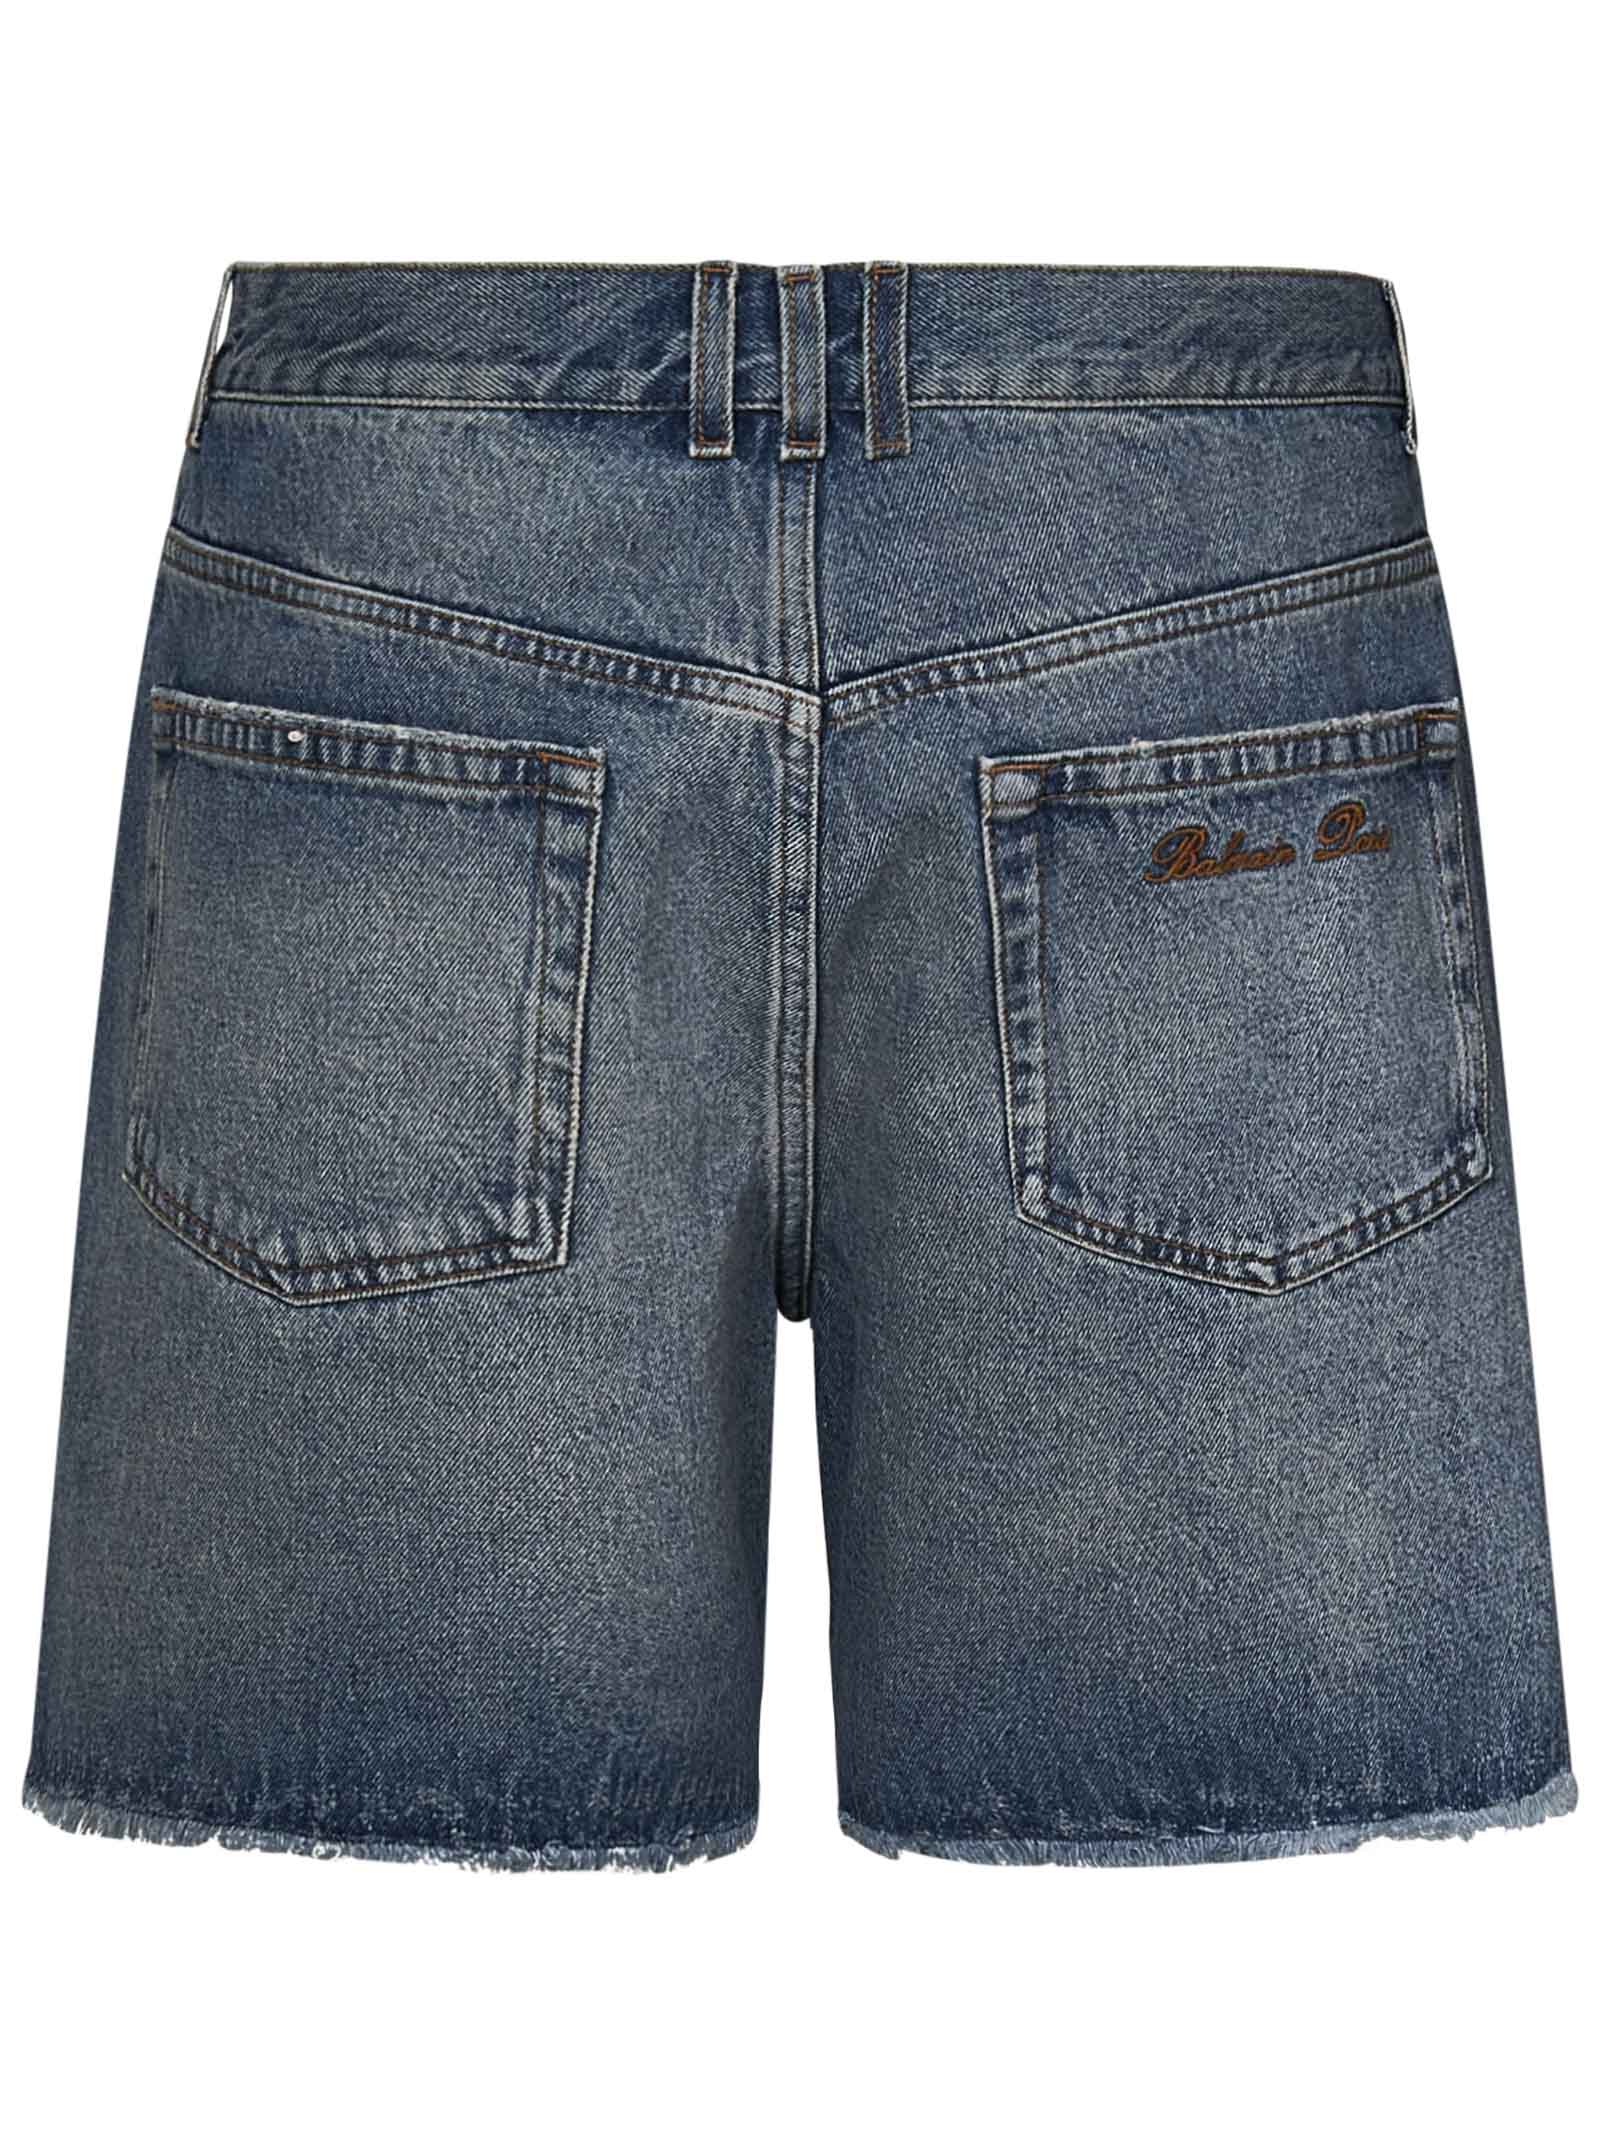 Shop Balmain Shorts In Blue